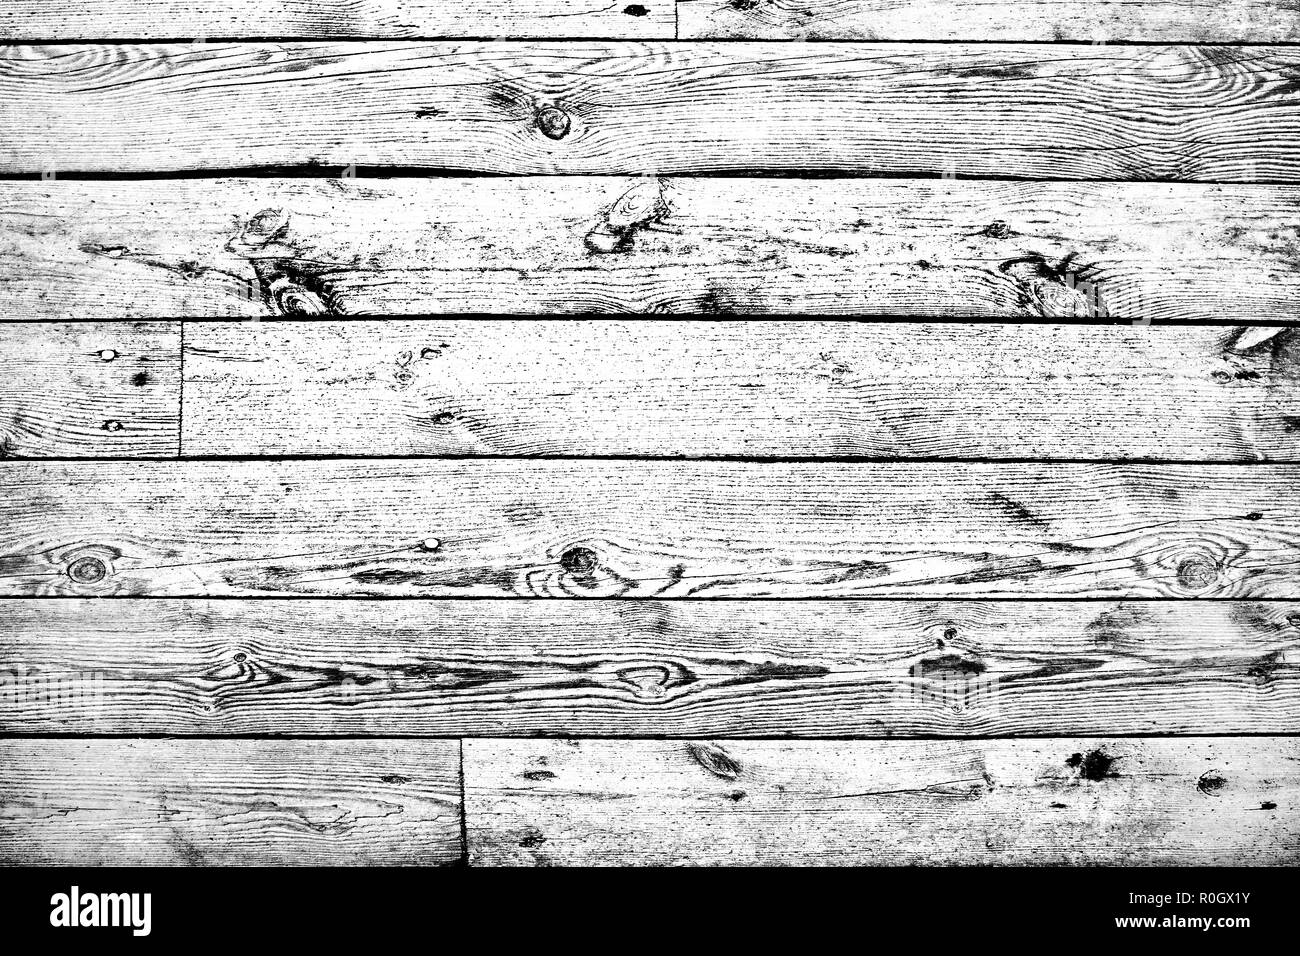 Elegante in bianco e nero a contrasto elevato sullo sfondo di legno o texture, dissaturato Immagine hdr Foto Stock